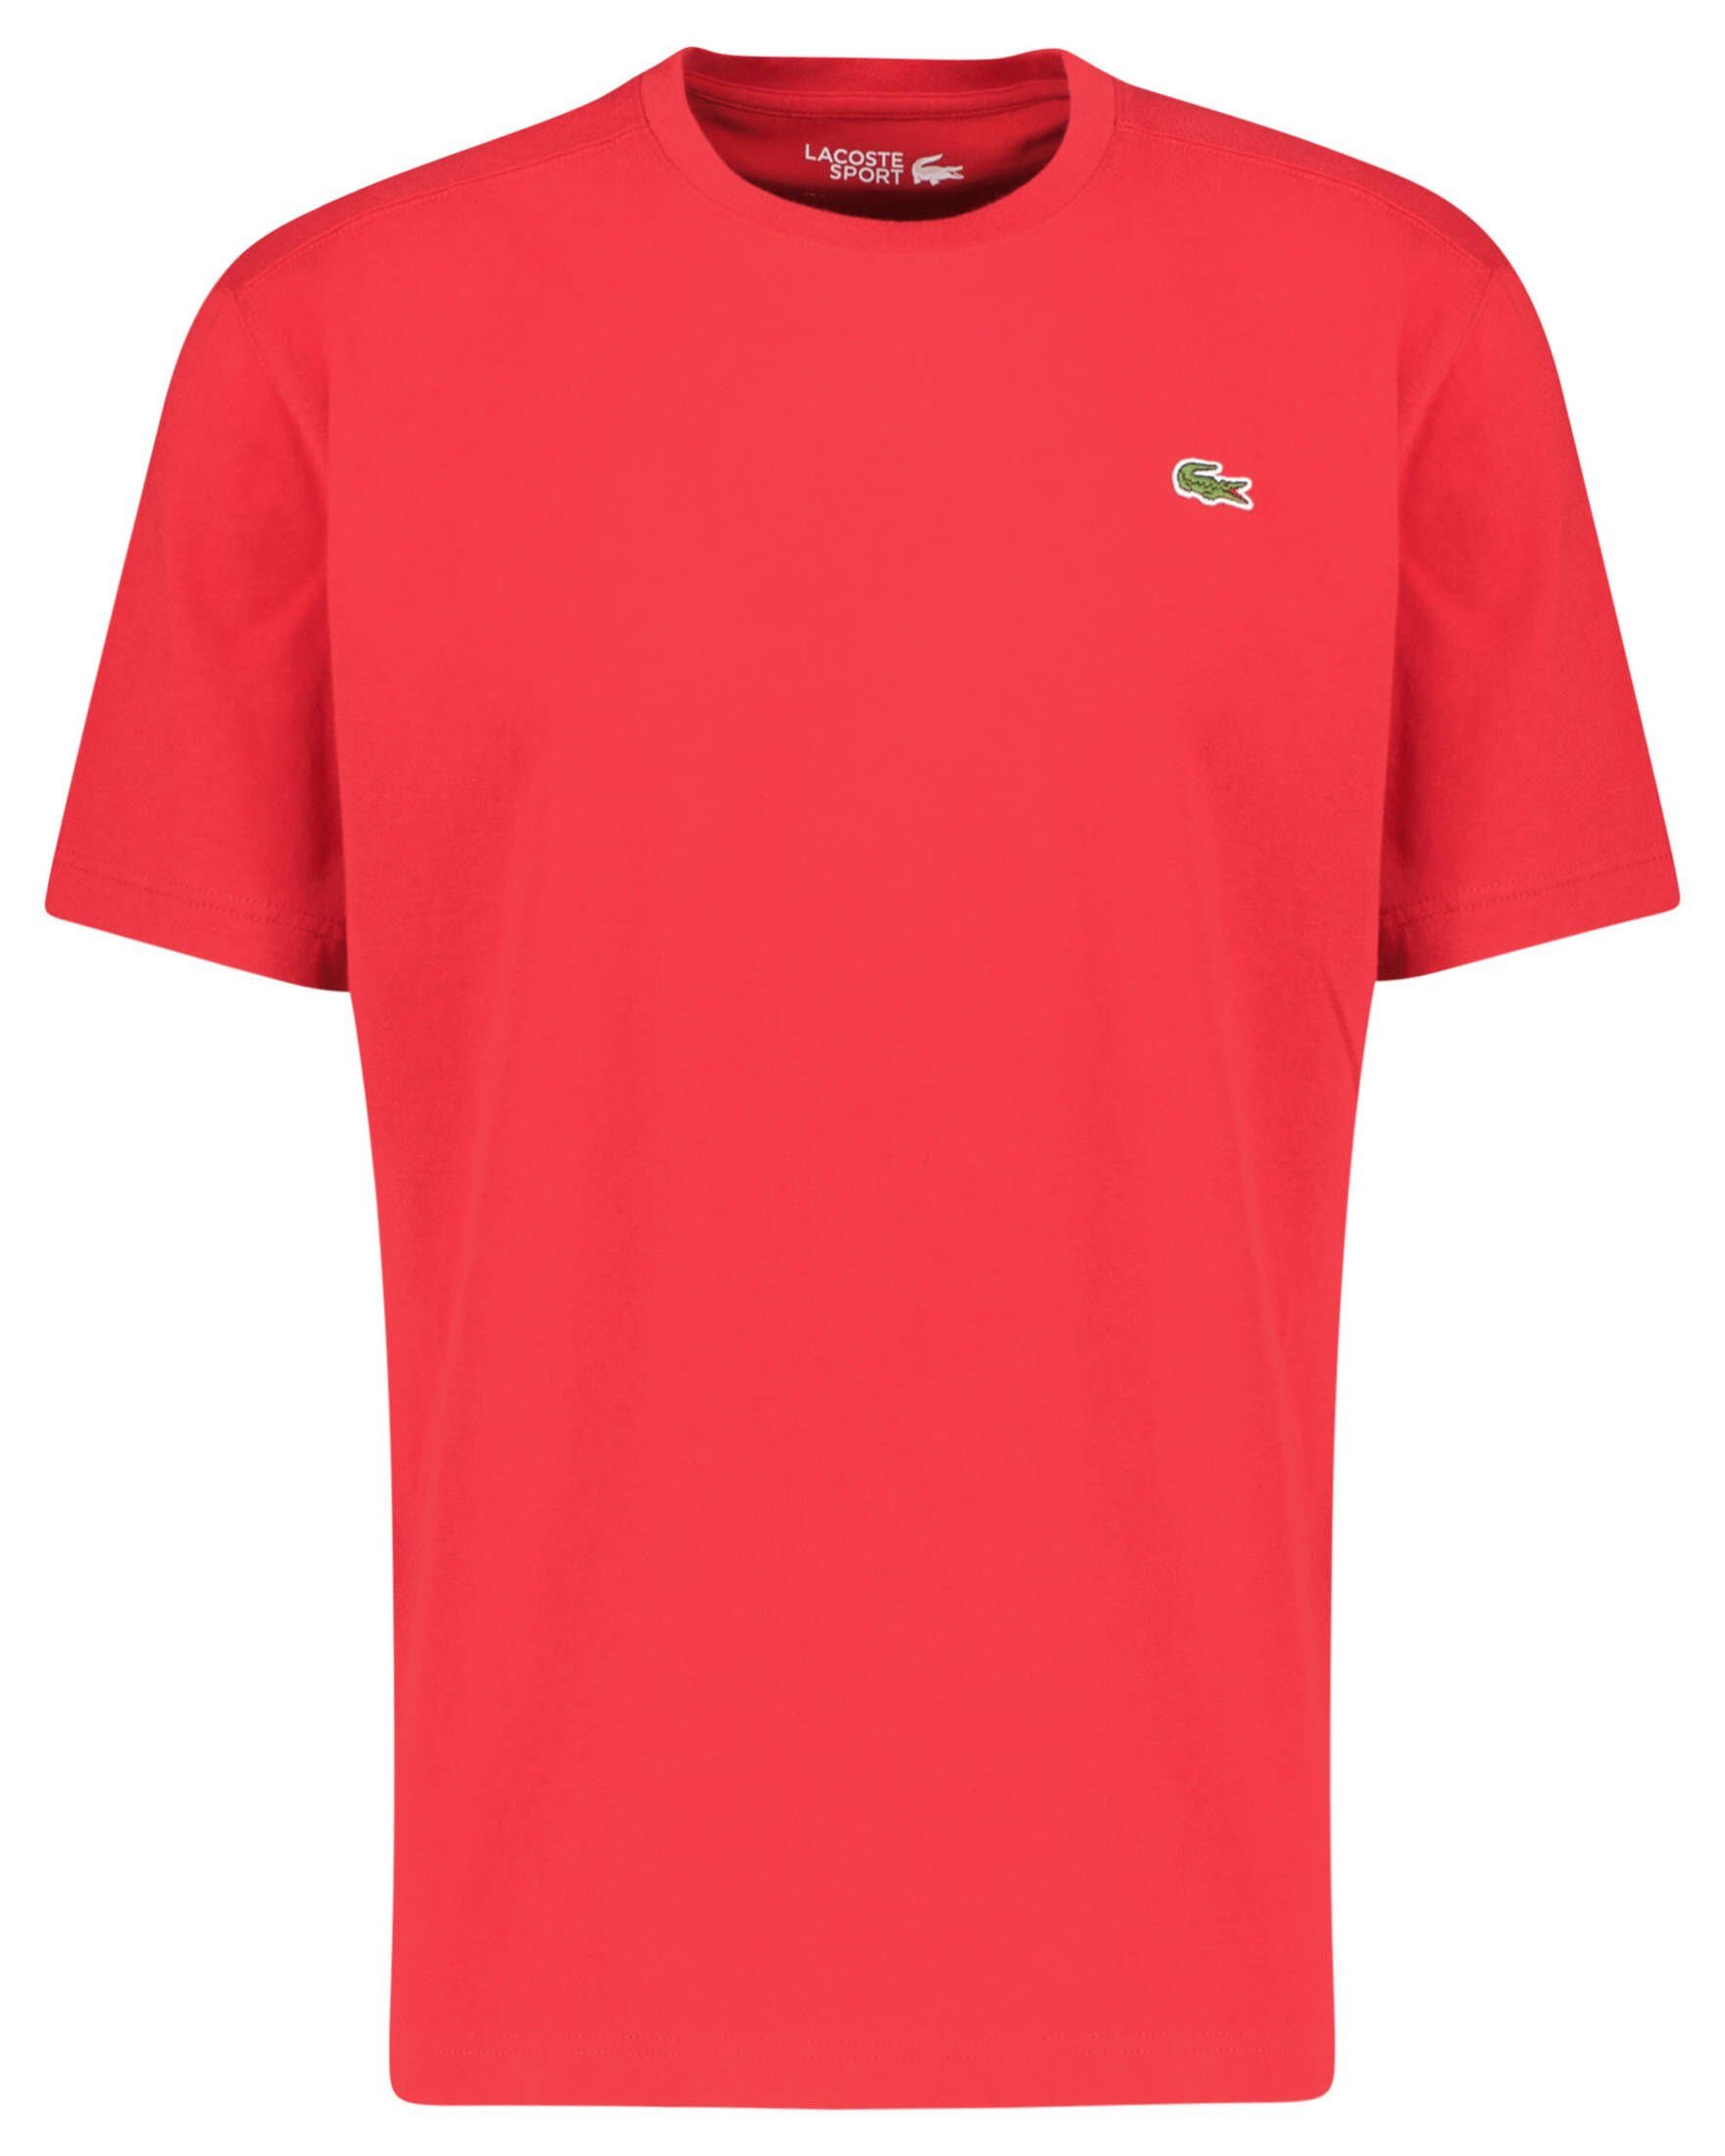 Tennisshirt (74) TEE-SHIRT Lacoste Tennisshirt Herren rot Sport